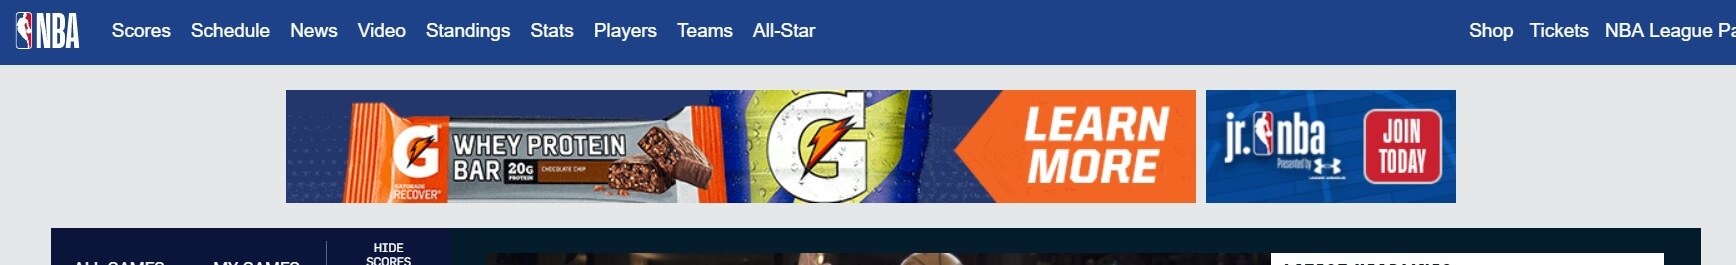 Um exemplo de anúncio de banner na página inicial da NBA